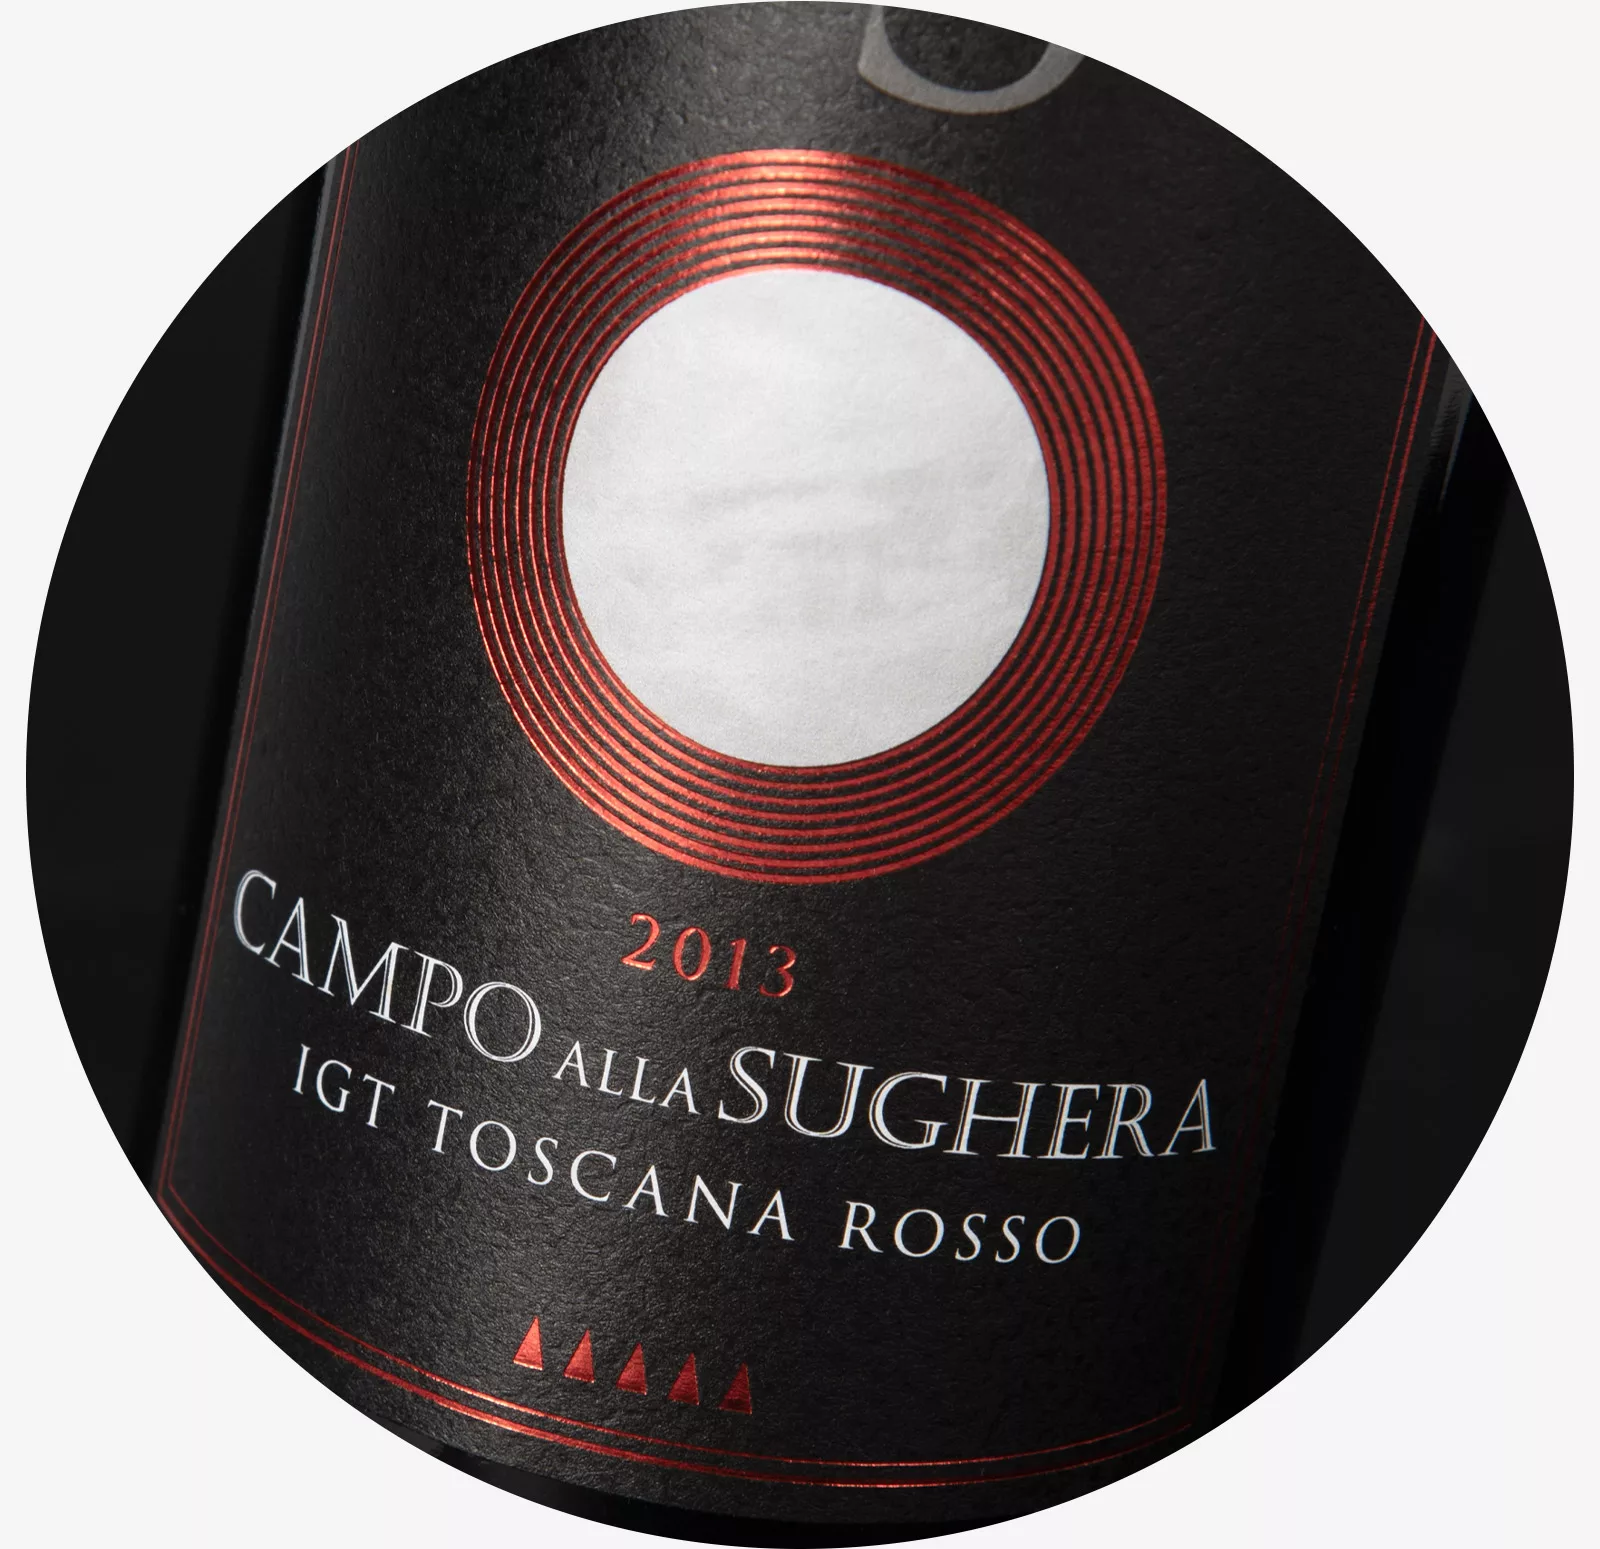 Rotwein Etikett "IGT Toscana Rosso" von Campo alla Sughera